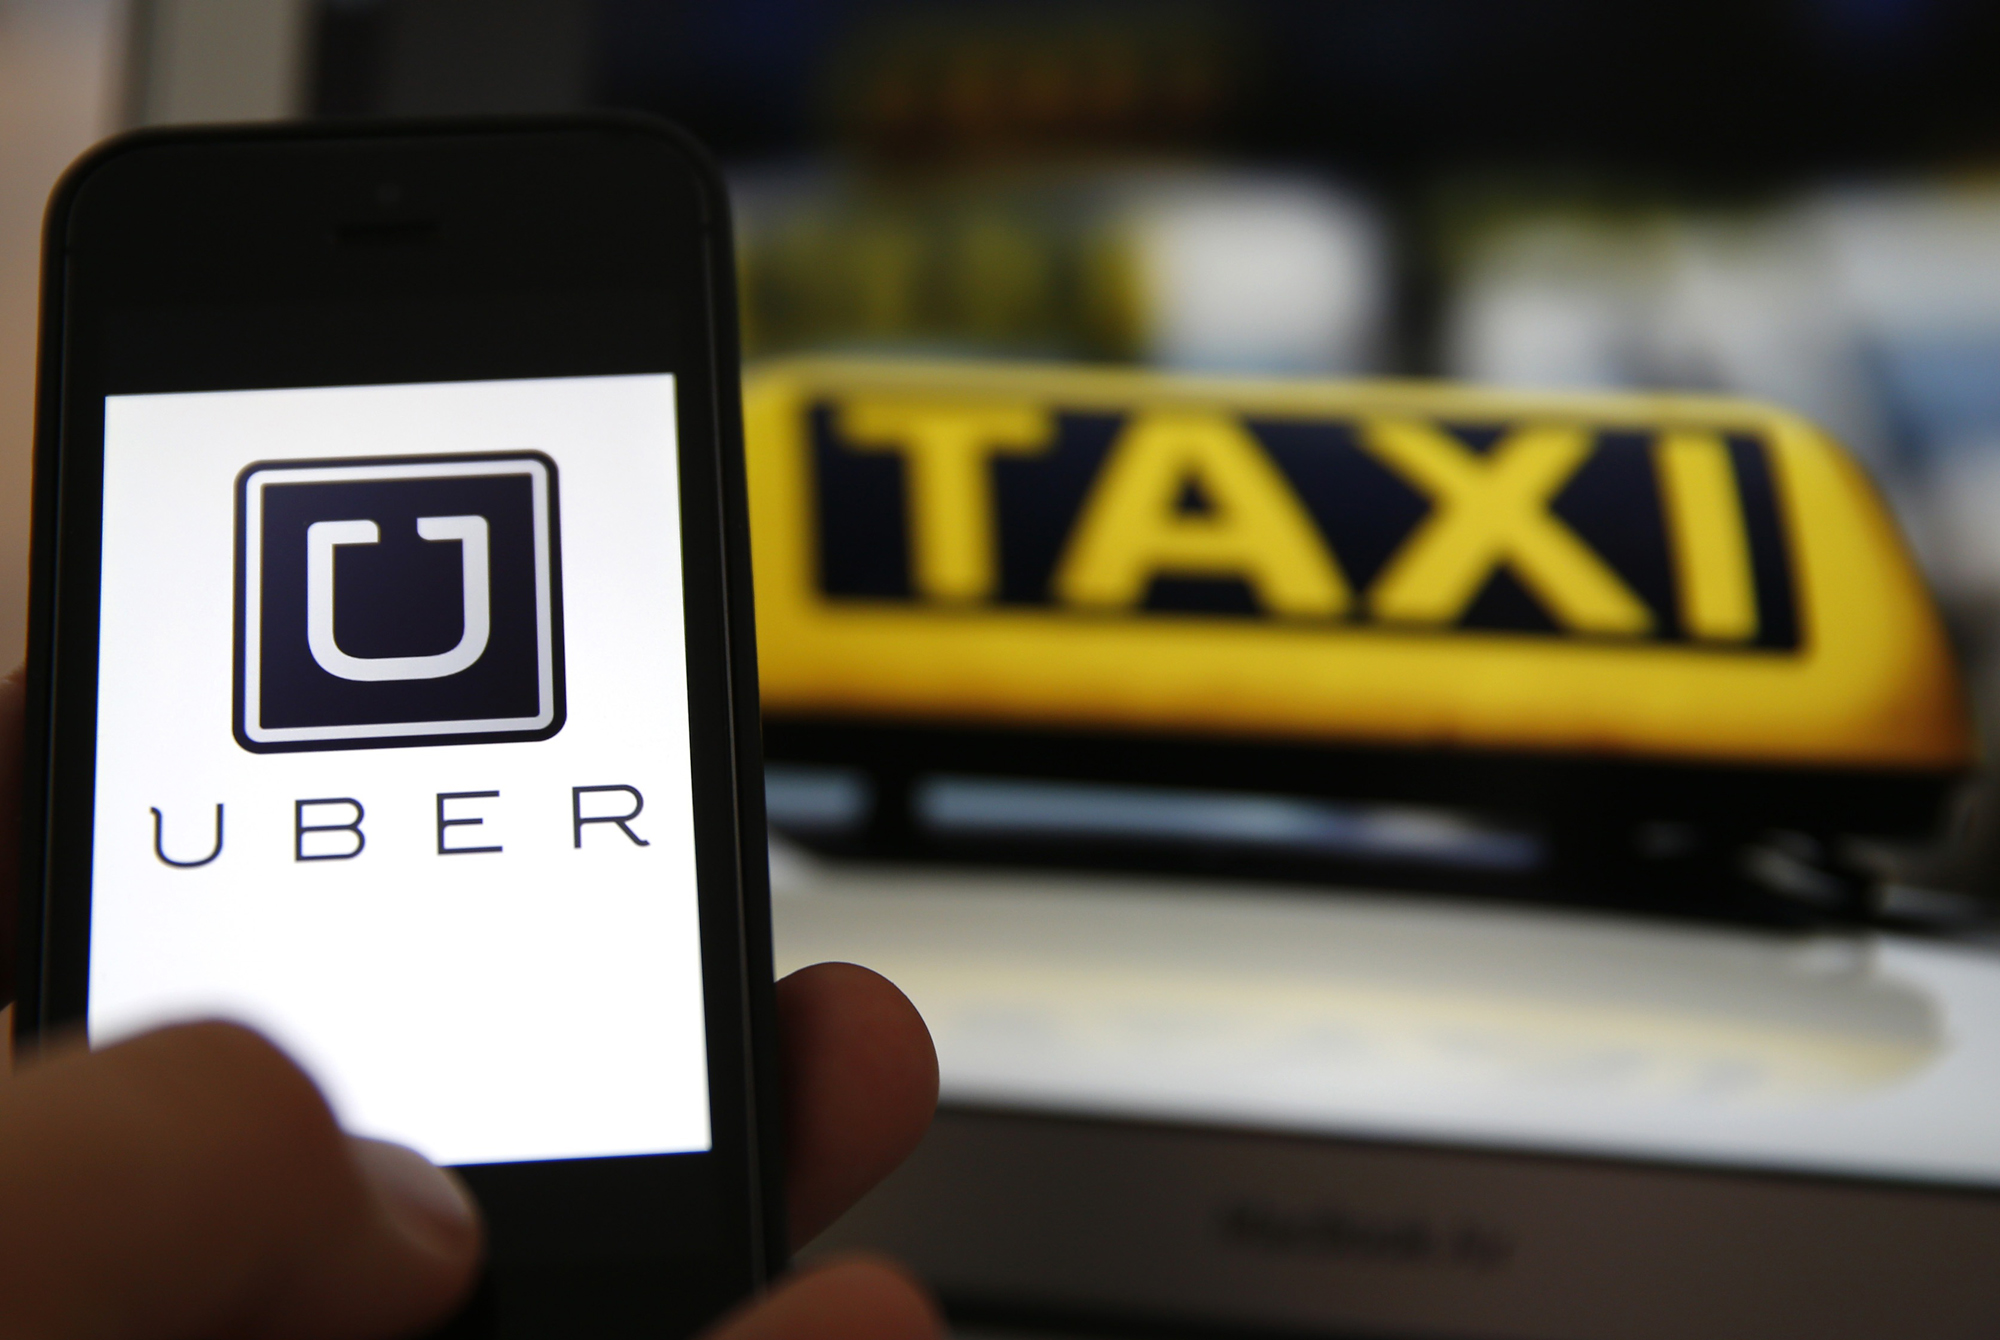 Λονδίνο: Περισσότεροι από 600.000 άνθρωποι ζητούν να μείνει η Uber στην πόλη